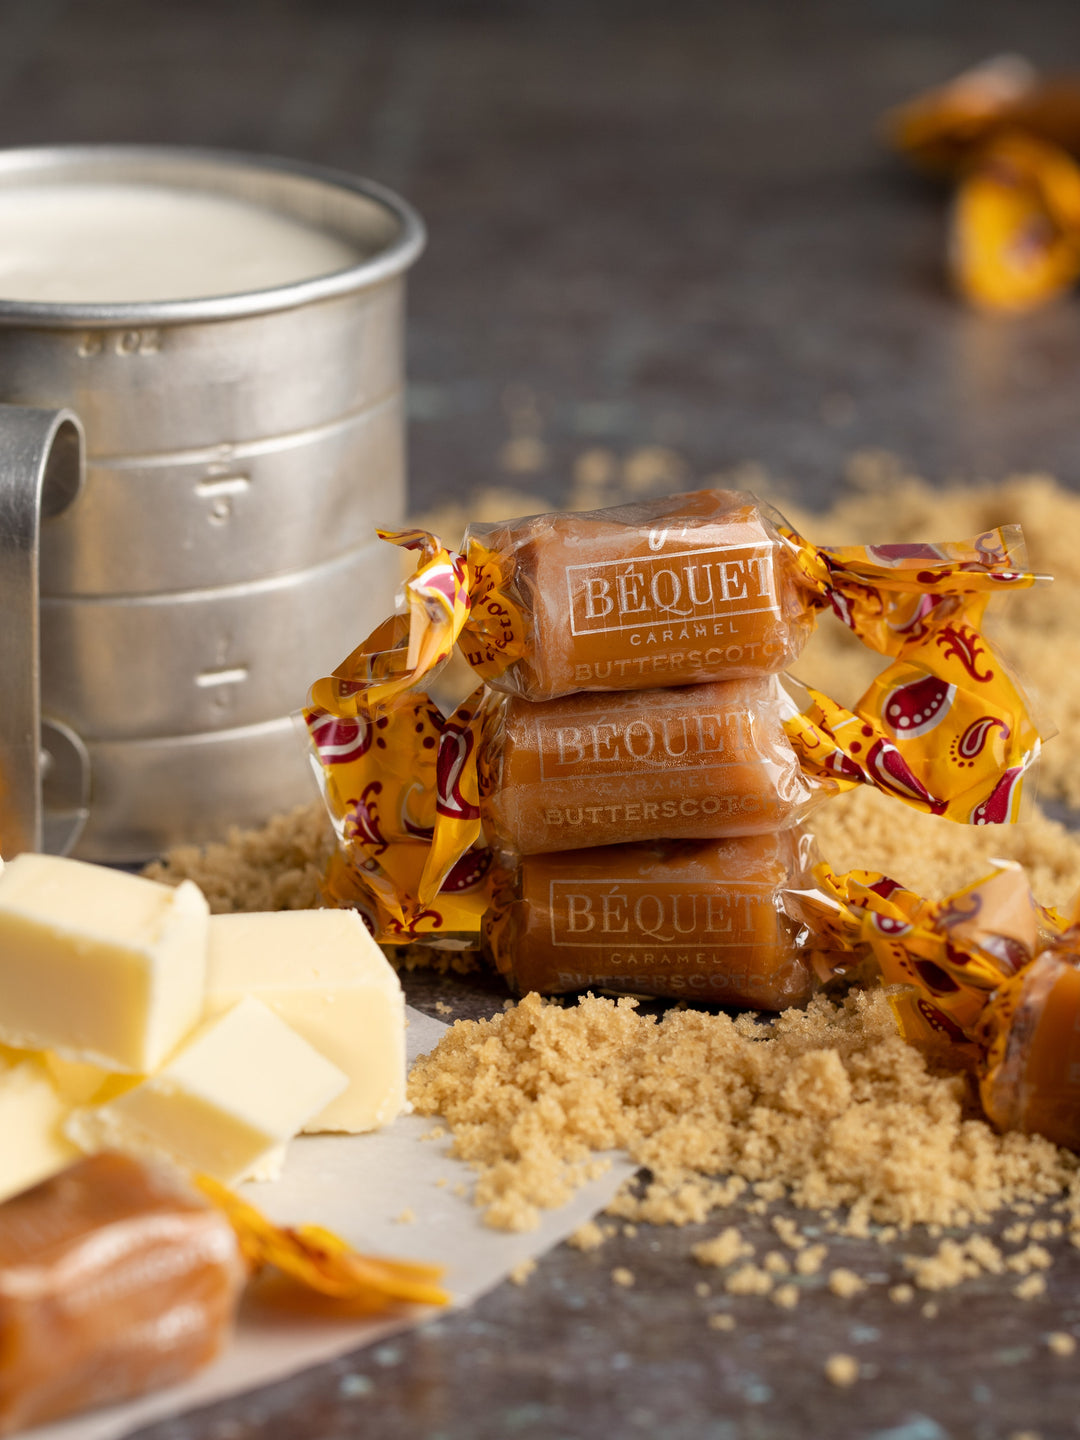 butterscotch bequet caramel#caramel-variety_butterscotch